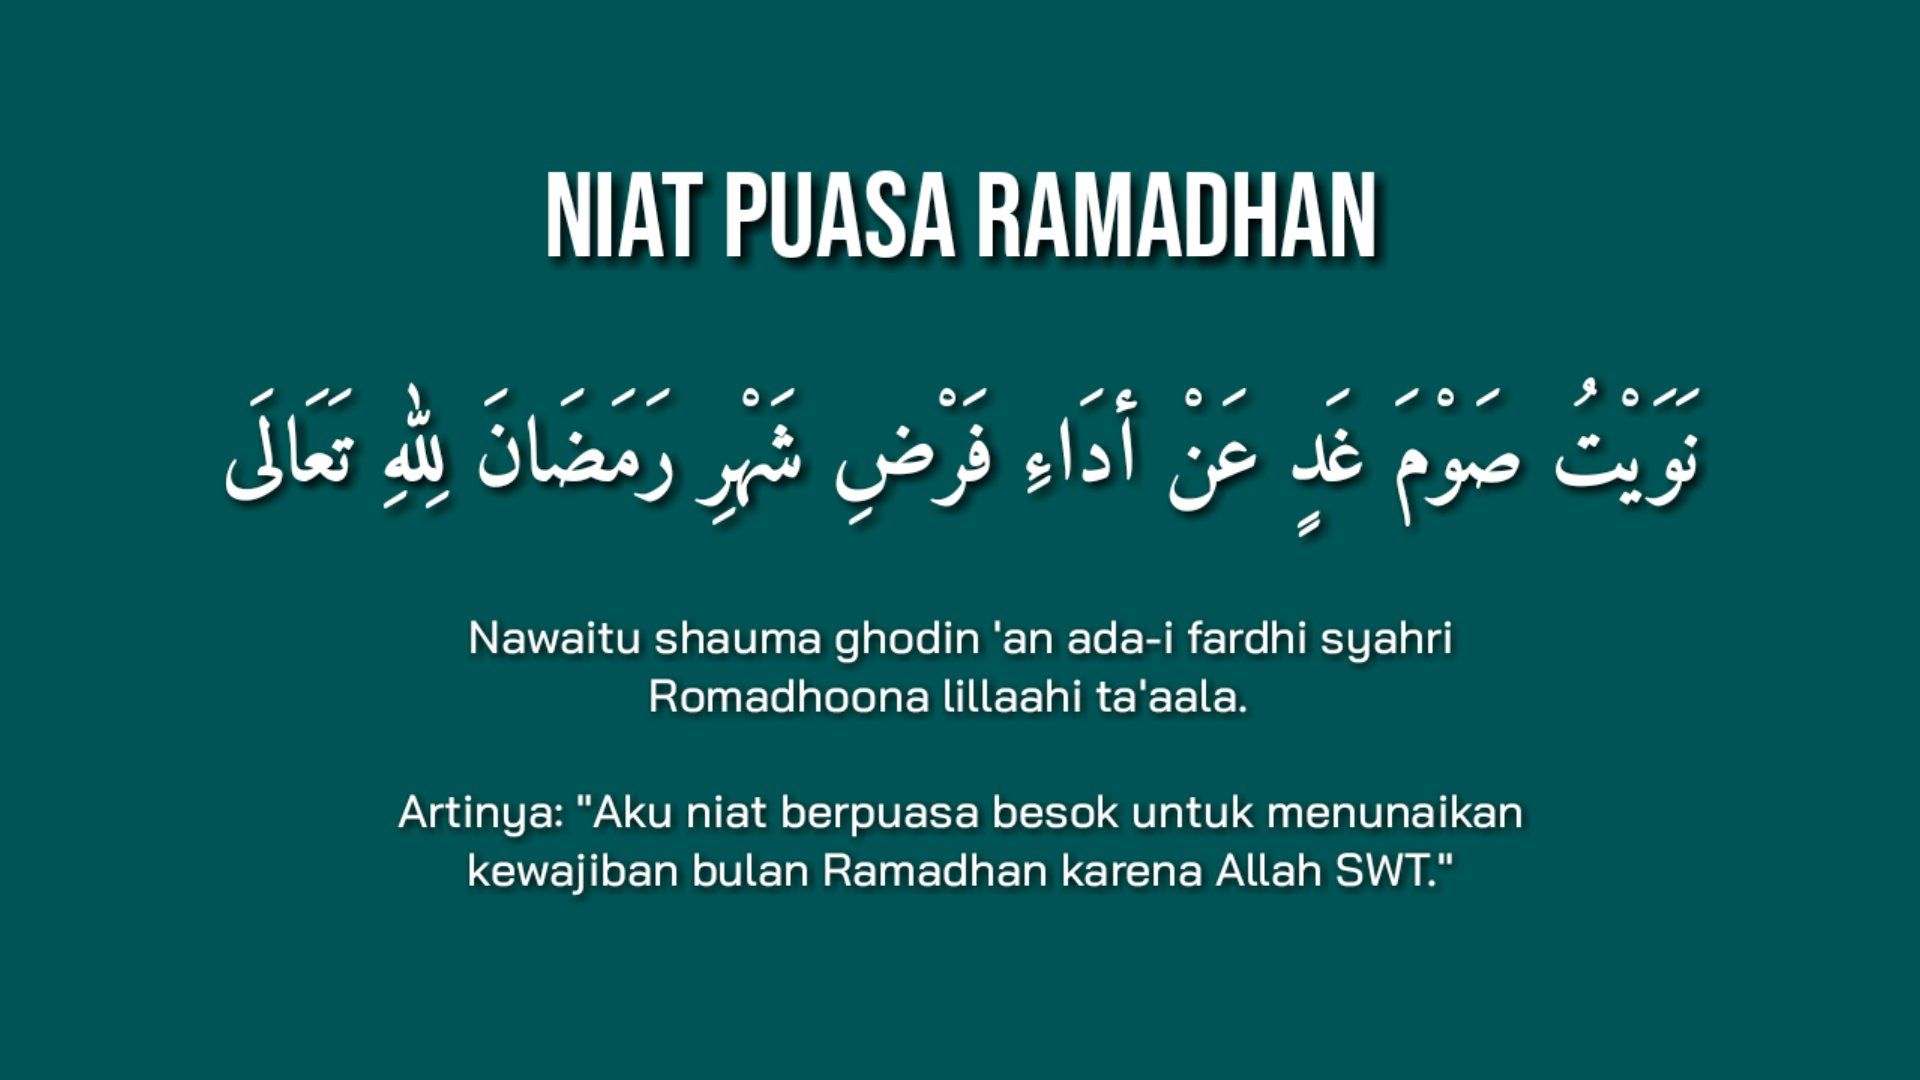 Doa sebelum berbuka puasa ramadhan